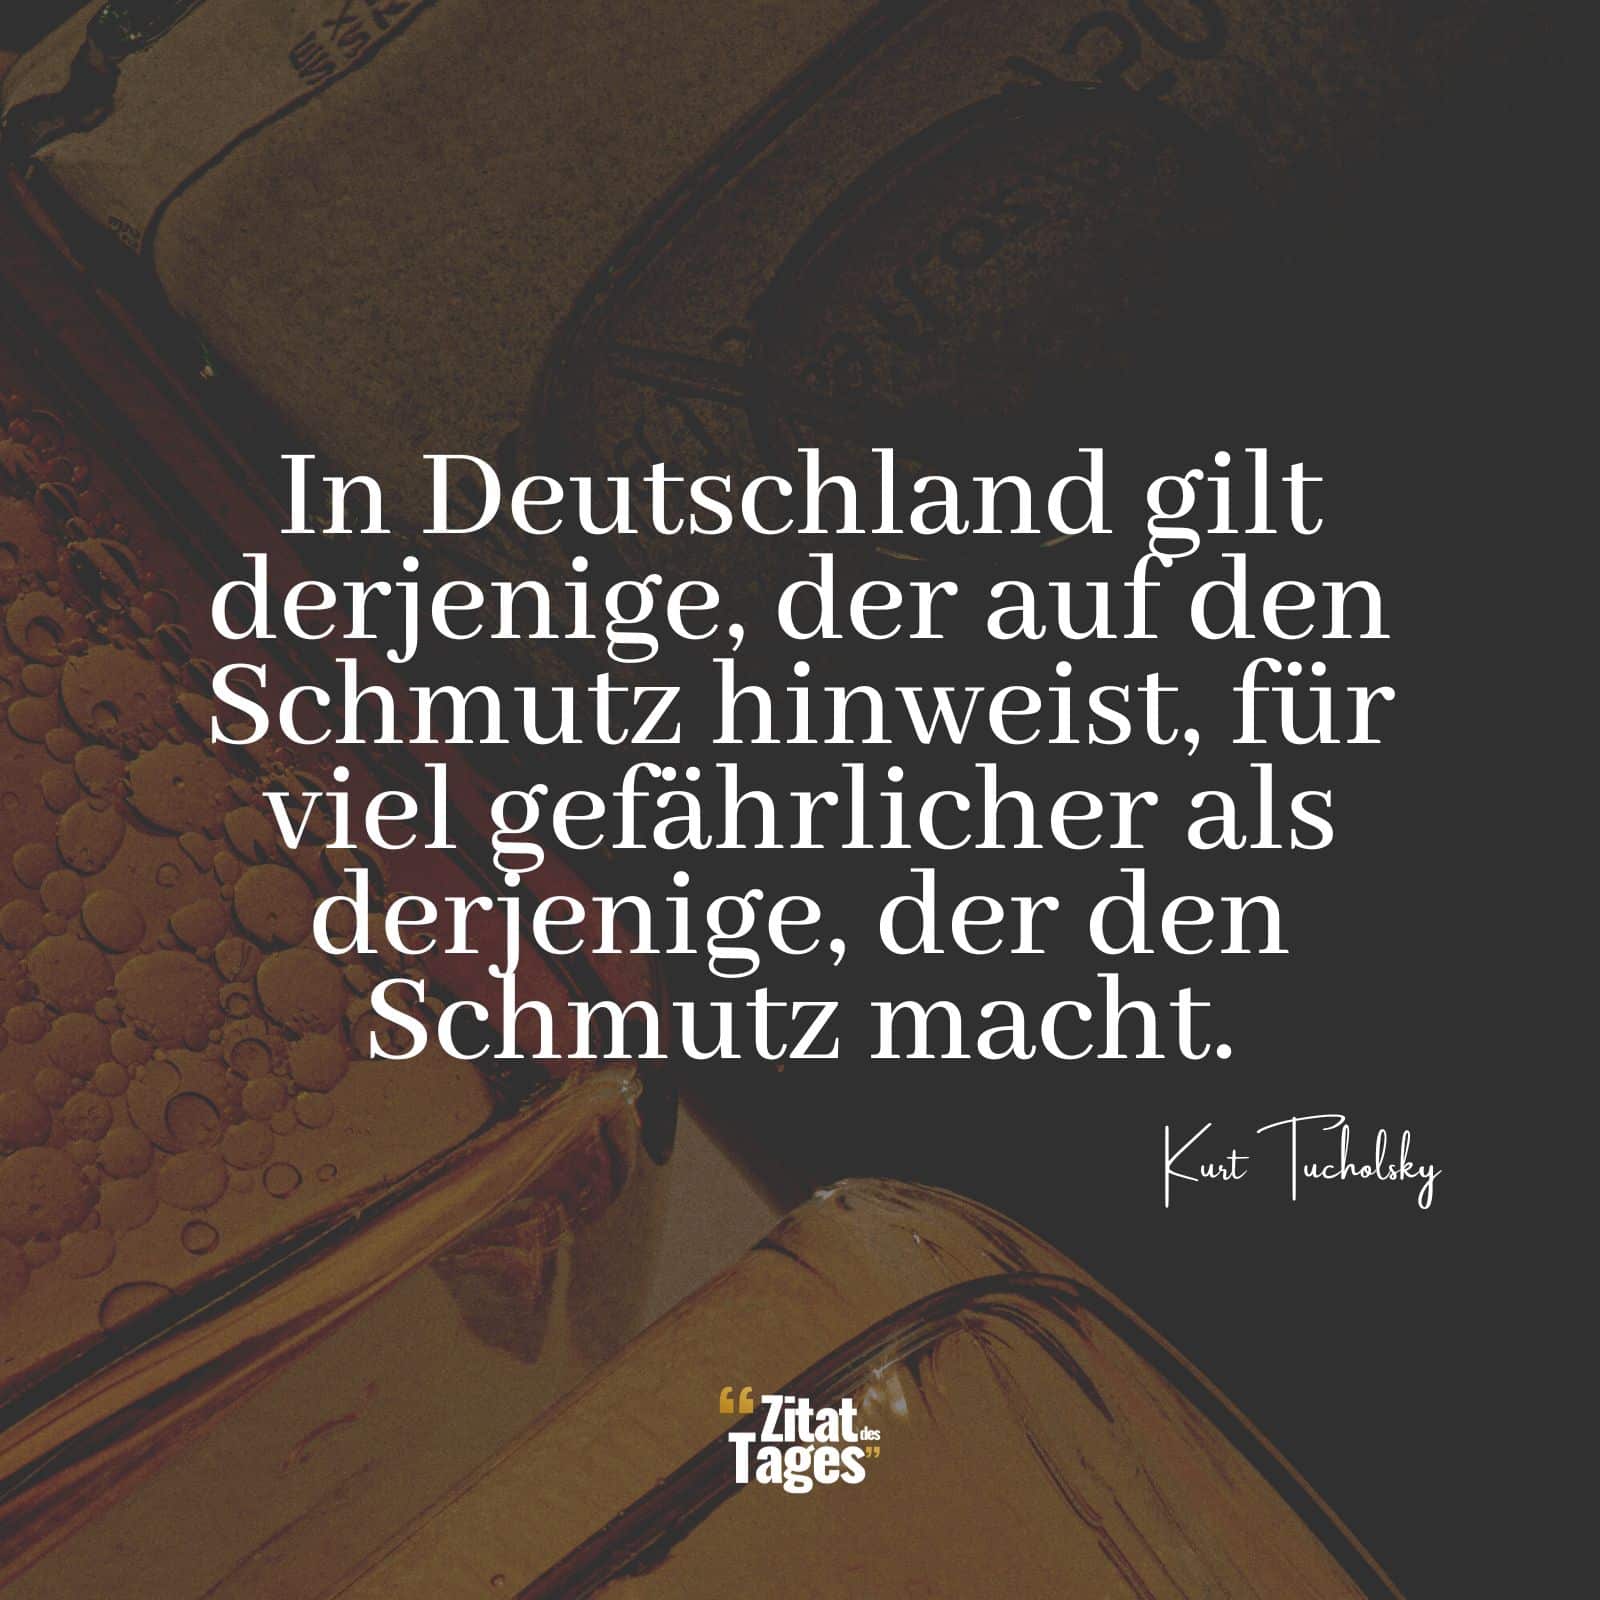 In Deutschland gilt derjenige, der auf den Schmutz hinweist, für viel gefährlicher als derjenige, der den Schmutz macht. - Kurt Tucholsky